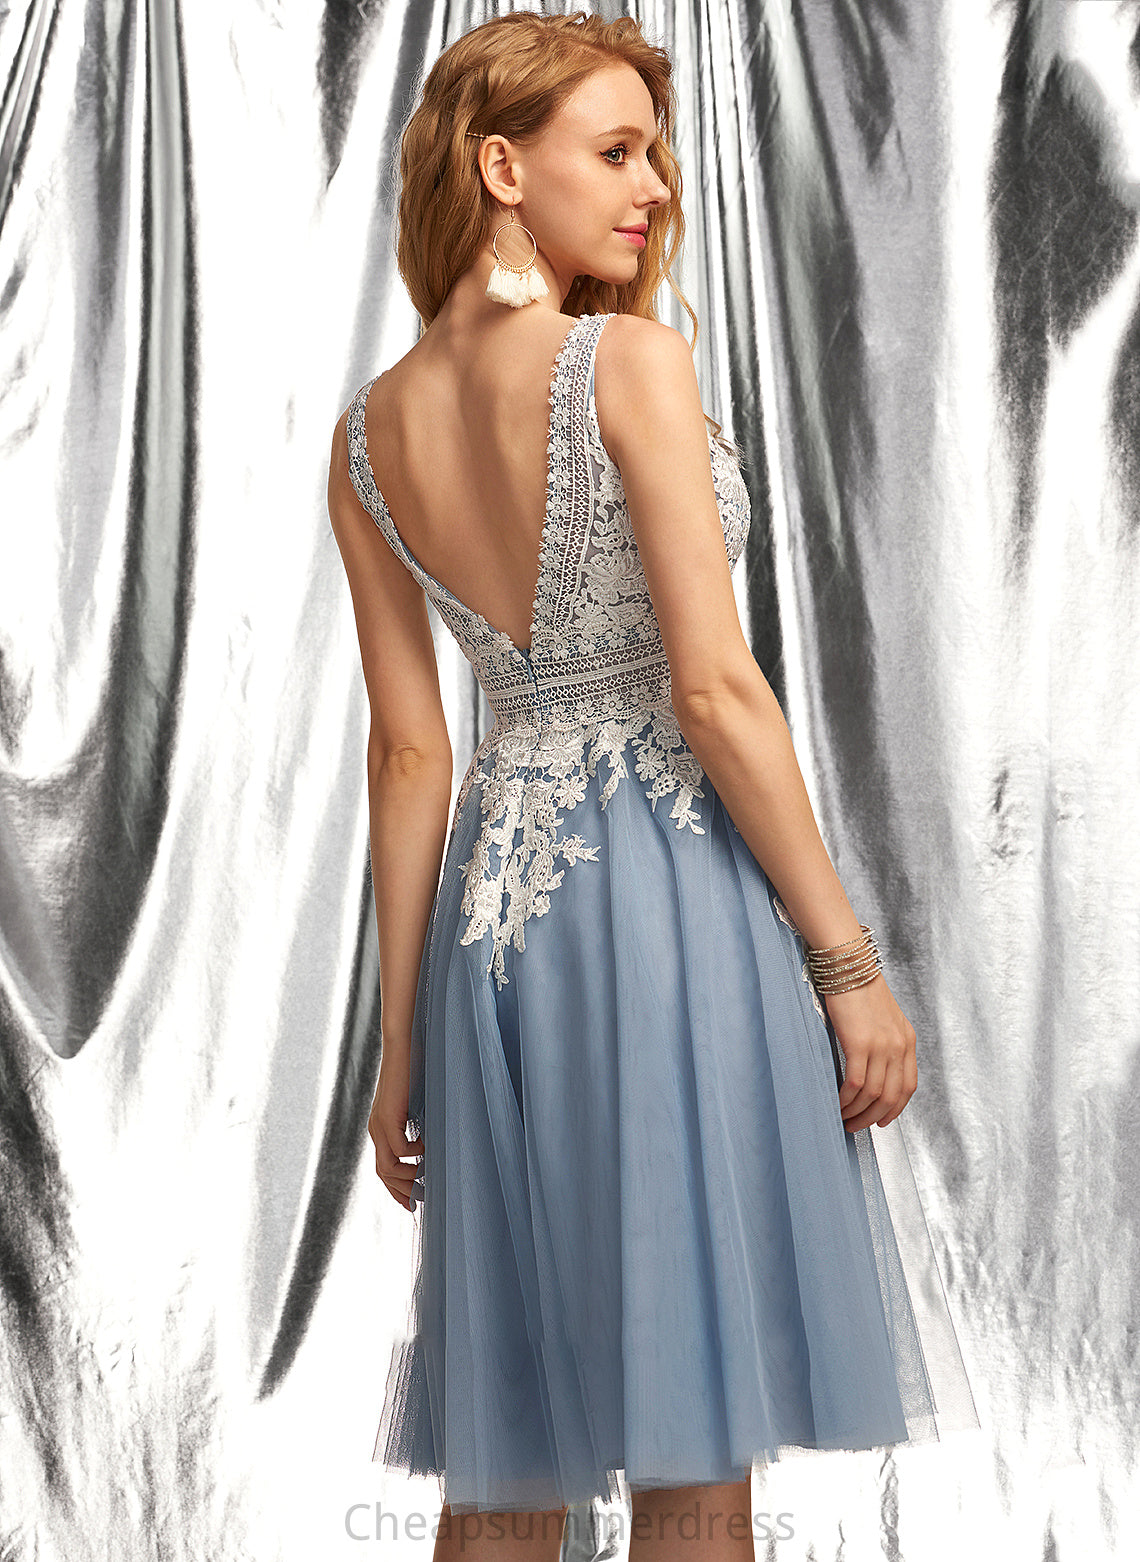 Lillian Tulle A-Line Knee-Length V-neck Prom Dresses